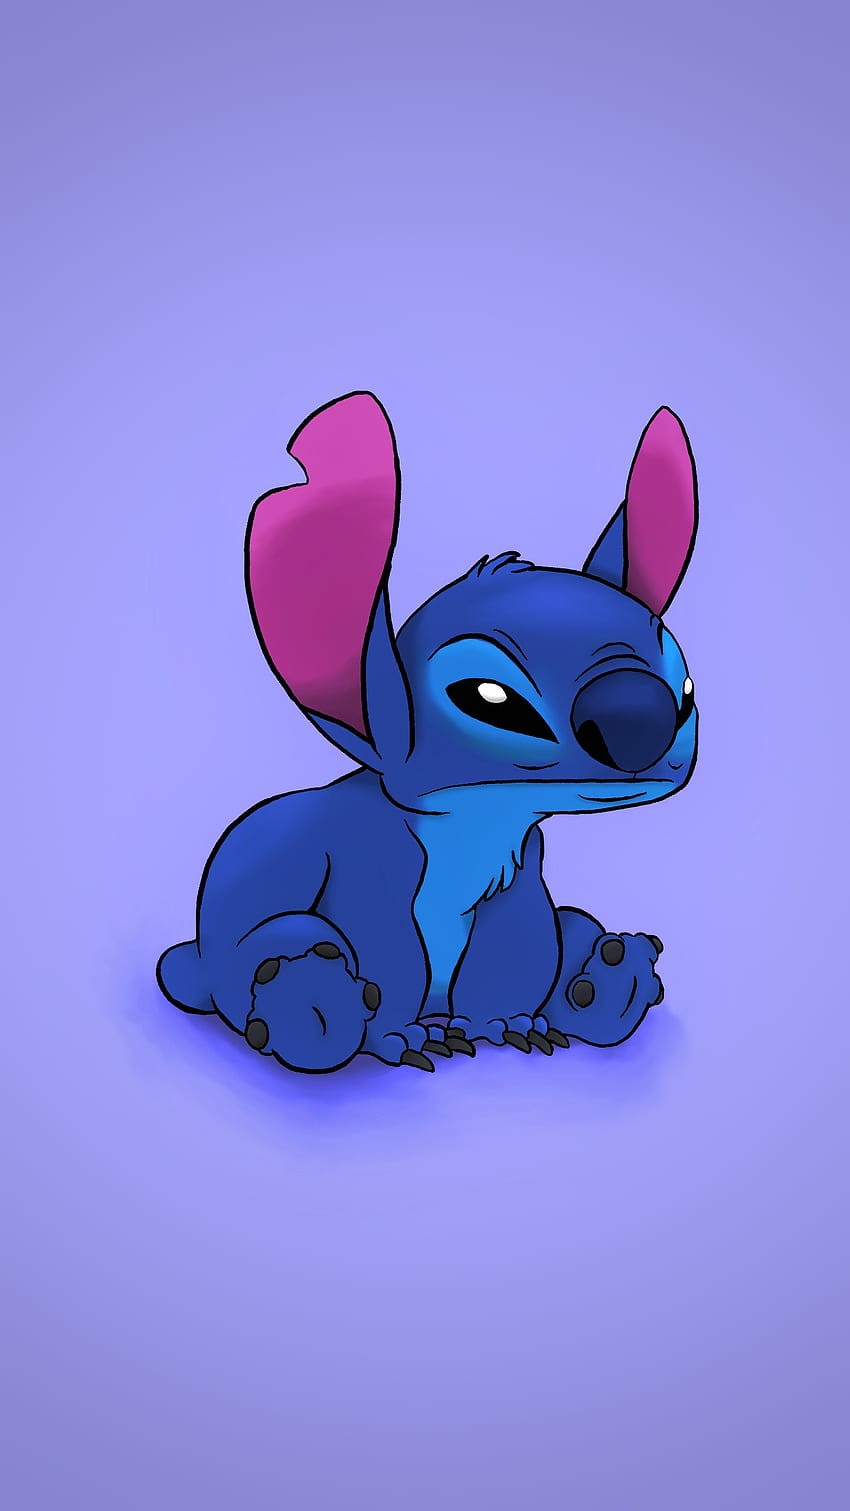 Category:Stitch! characters | Lilo & Stitch Wiki | Fandom